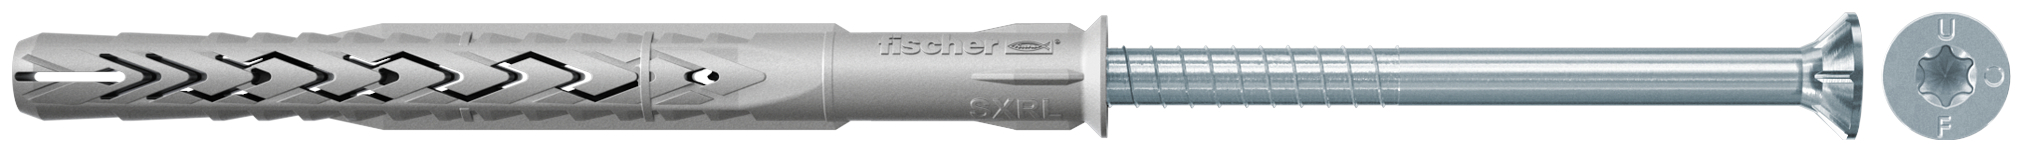 fischer Tasselli prolungati SXRL 14X300 T (1 Pz.) Tassello prolungato in nylon con marcatura CE con vite premontata T.S.P. impronta torx fie2567